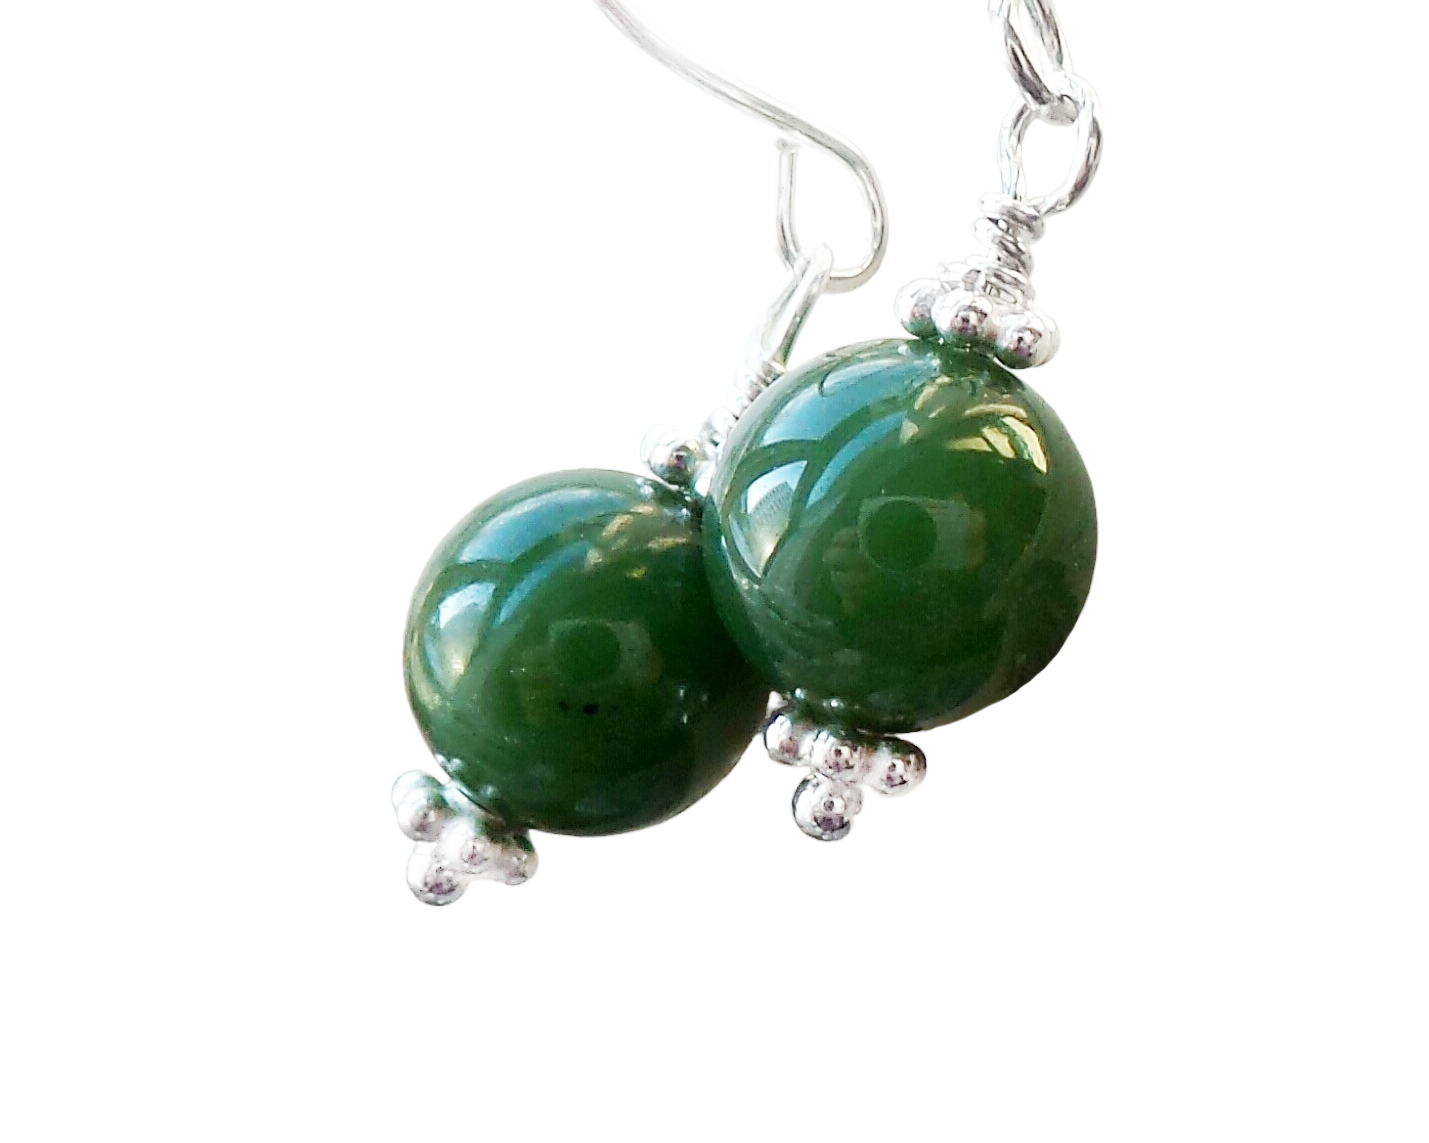 Vintage Canadian BC Jade Dangle Earrings, Sterling Silver, Green Nephrite Jade Stones